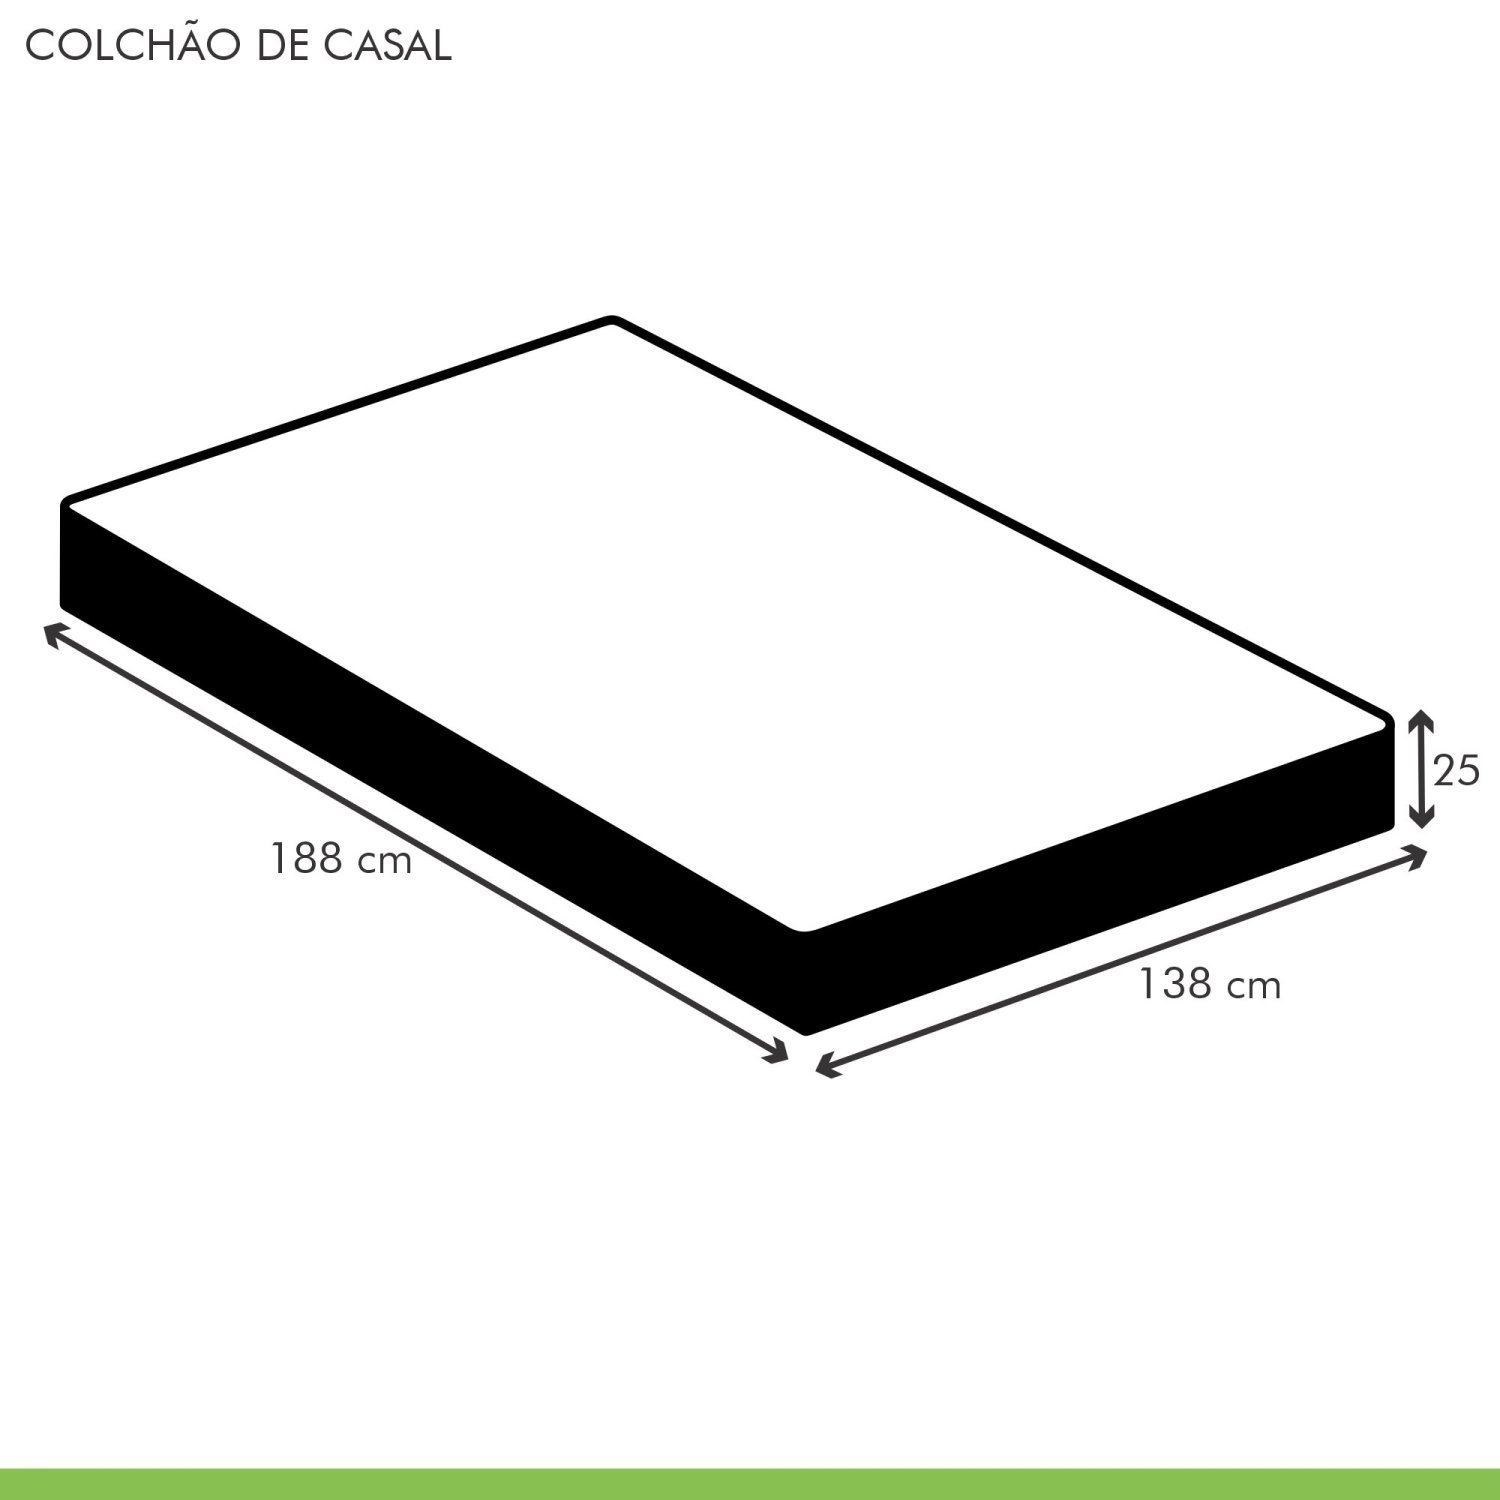 Colchão Casal Unique D45 Duoface 25x138x188cm  - 5